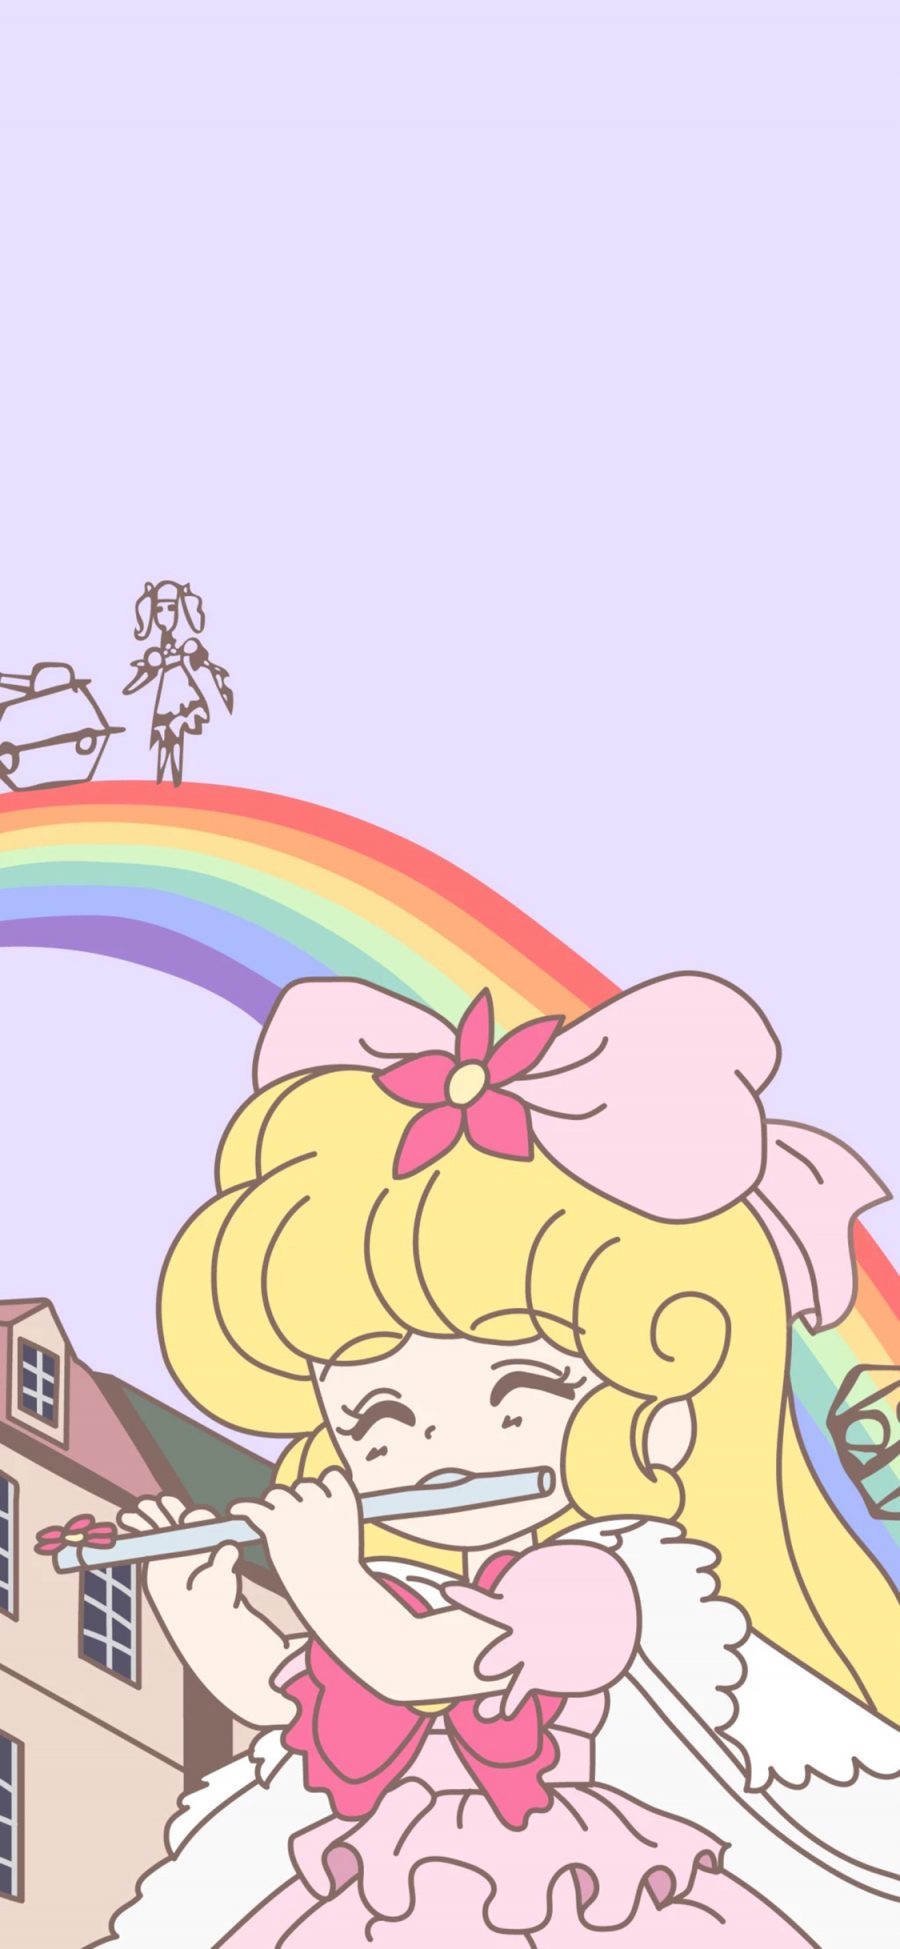 [2436×1125]女孩 吹笛子 卡通 彩虹 少女 苹果手机动漫壁纸图片